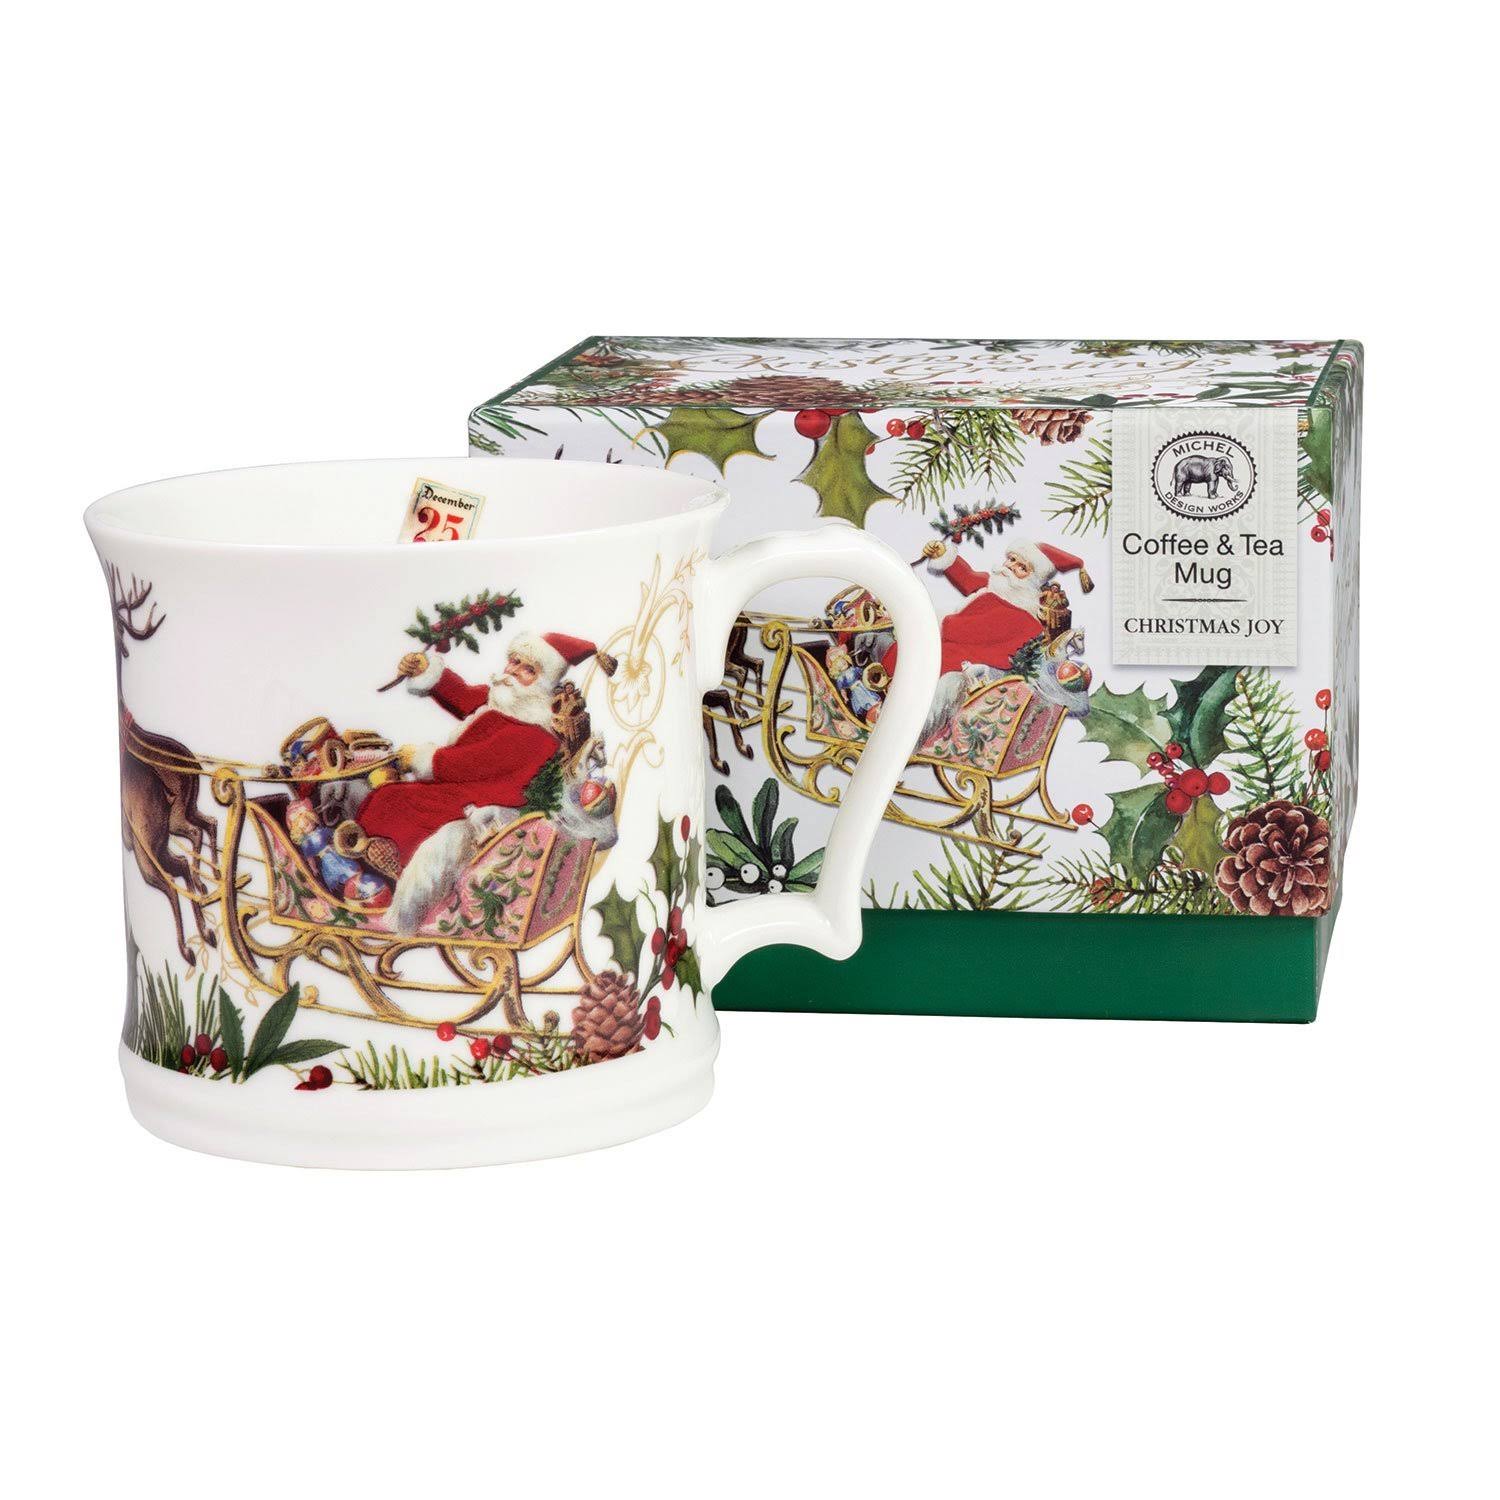 Michel Design Works Coffee and Tea Mug, Christmas Joy